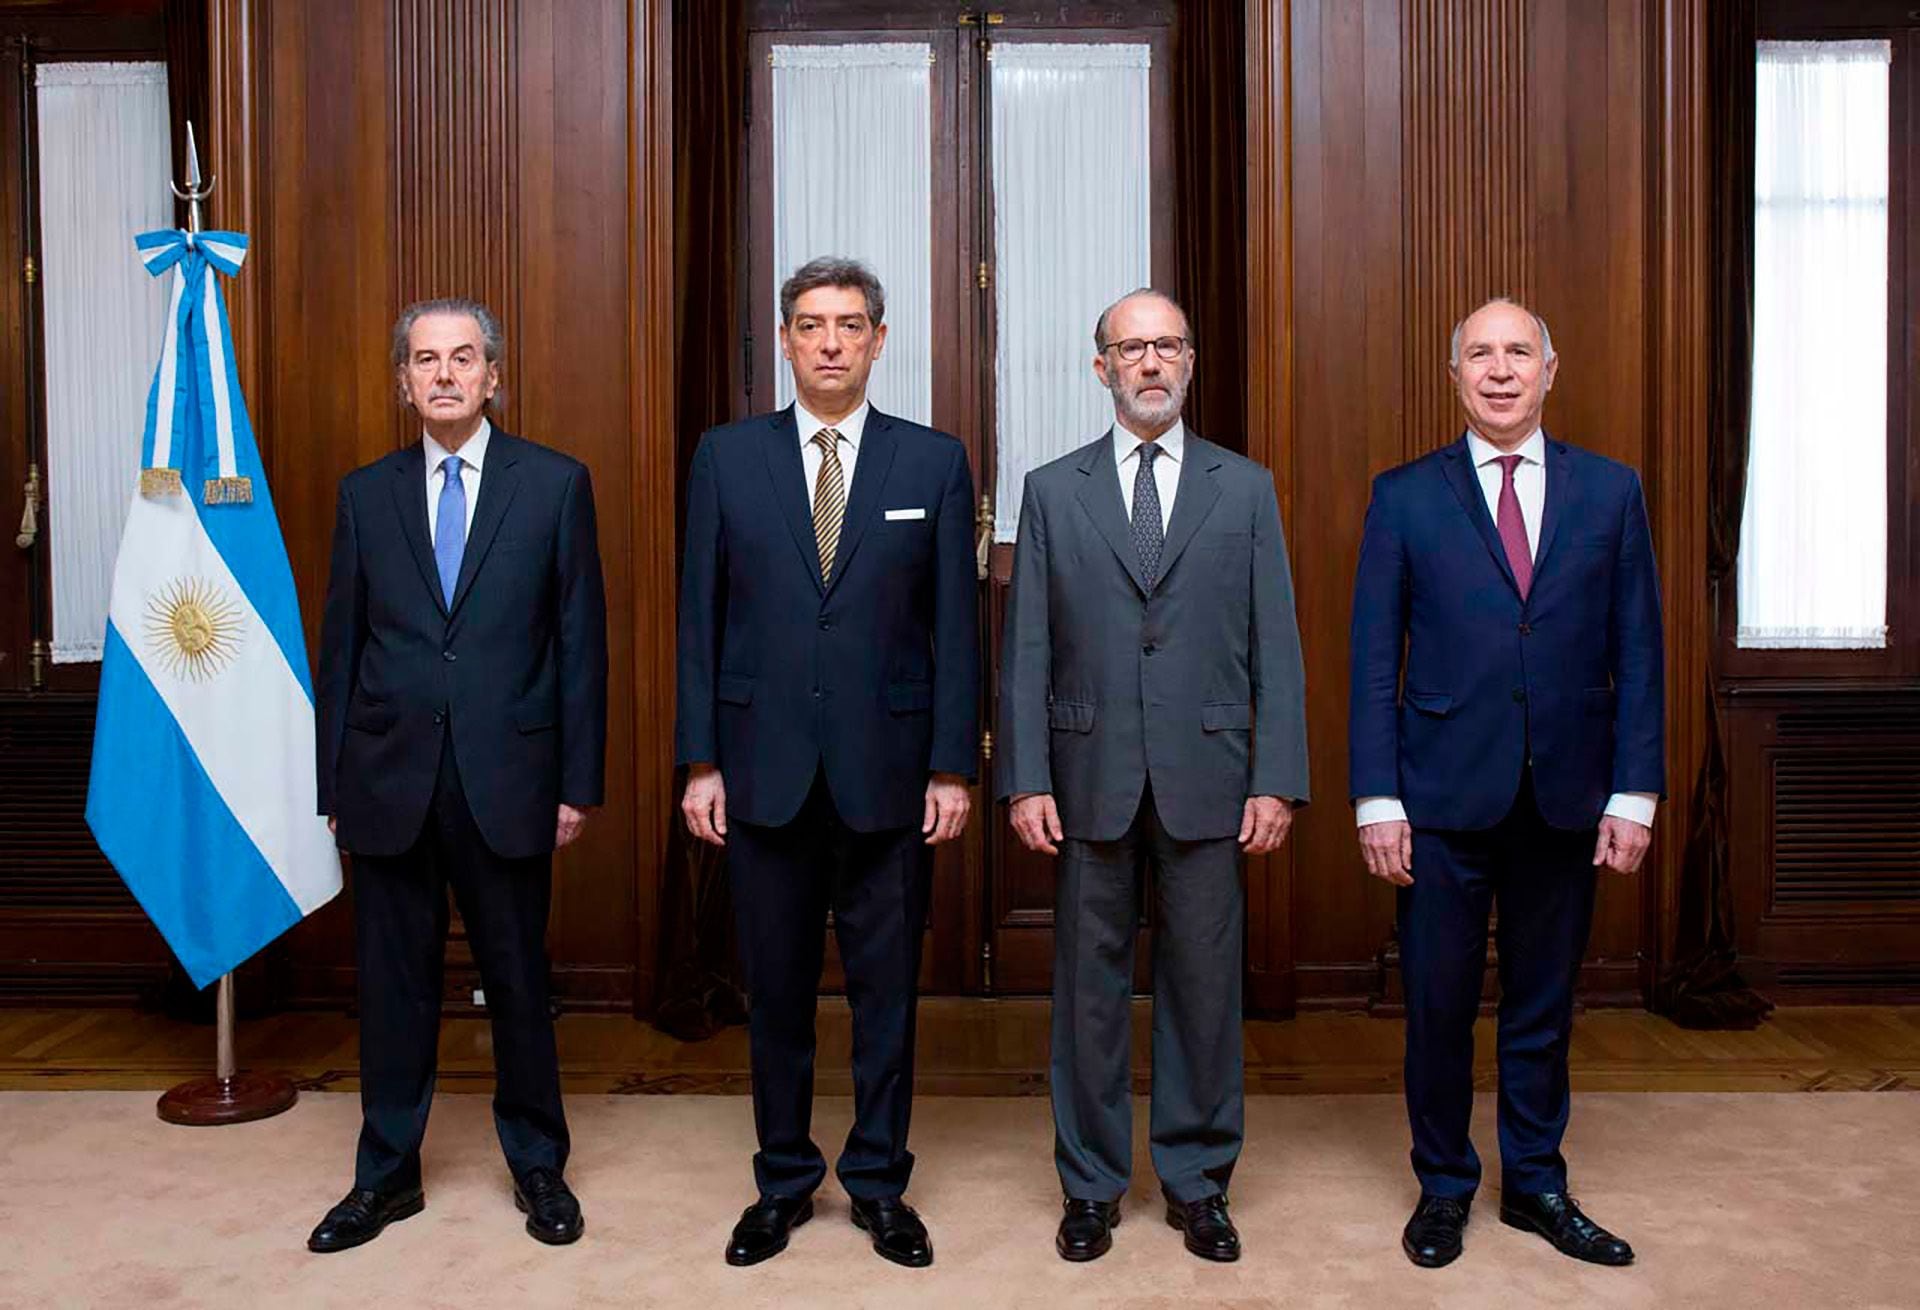 Los jueces de la Corte Suprema de Justicia de la Nación: Juan Carlos Maqueda, Horacio Rosatti, Carlos Rosenkrantz, Ricardo Lorenzetti